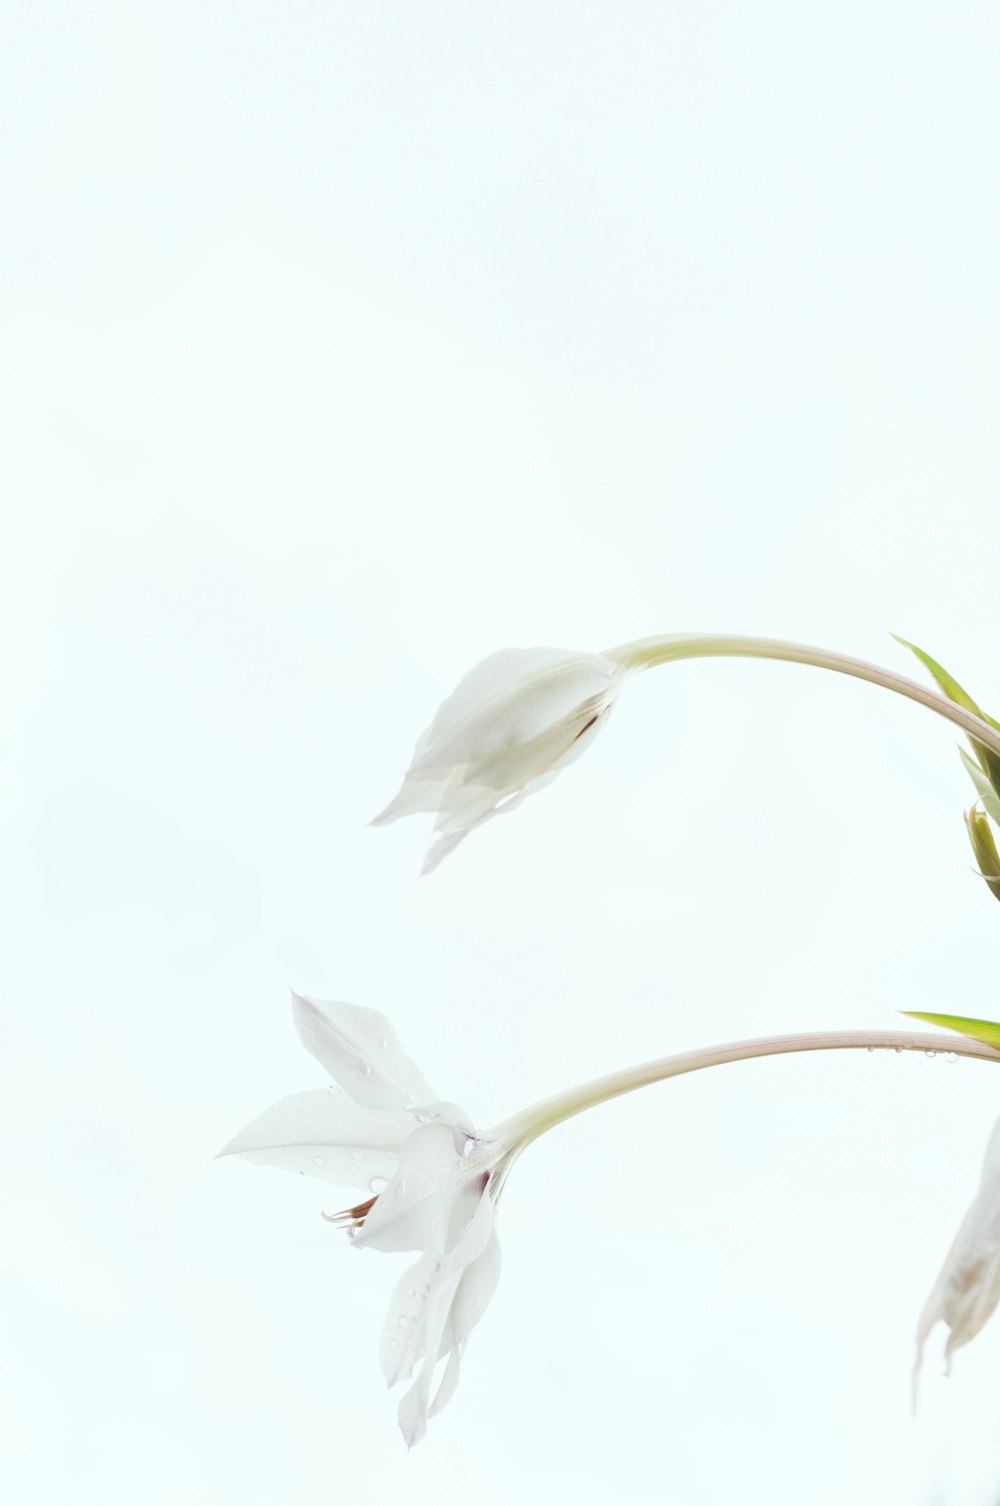 flor de pétalos blancos sobre fondo blanco